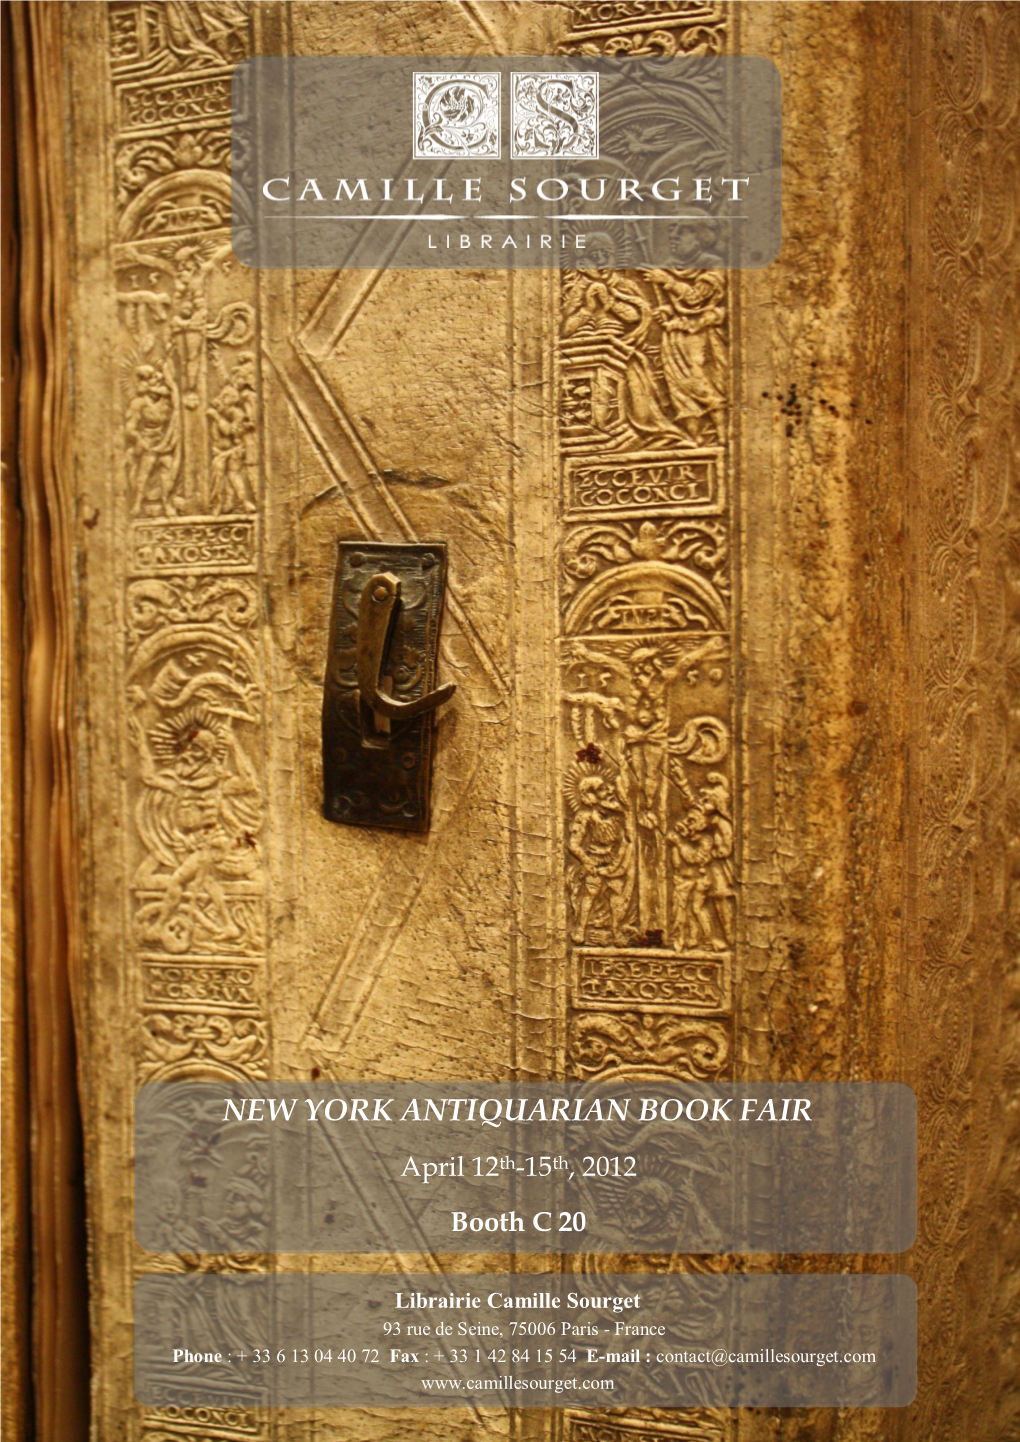 New York Antiquarian Book Fair